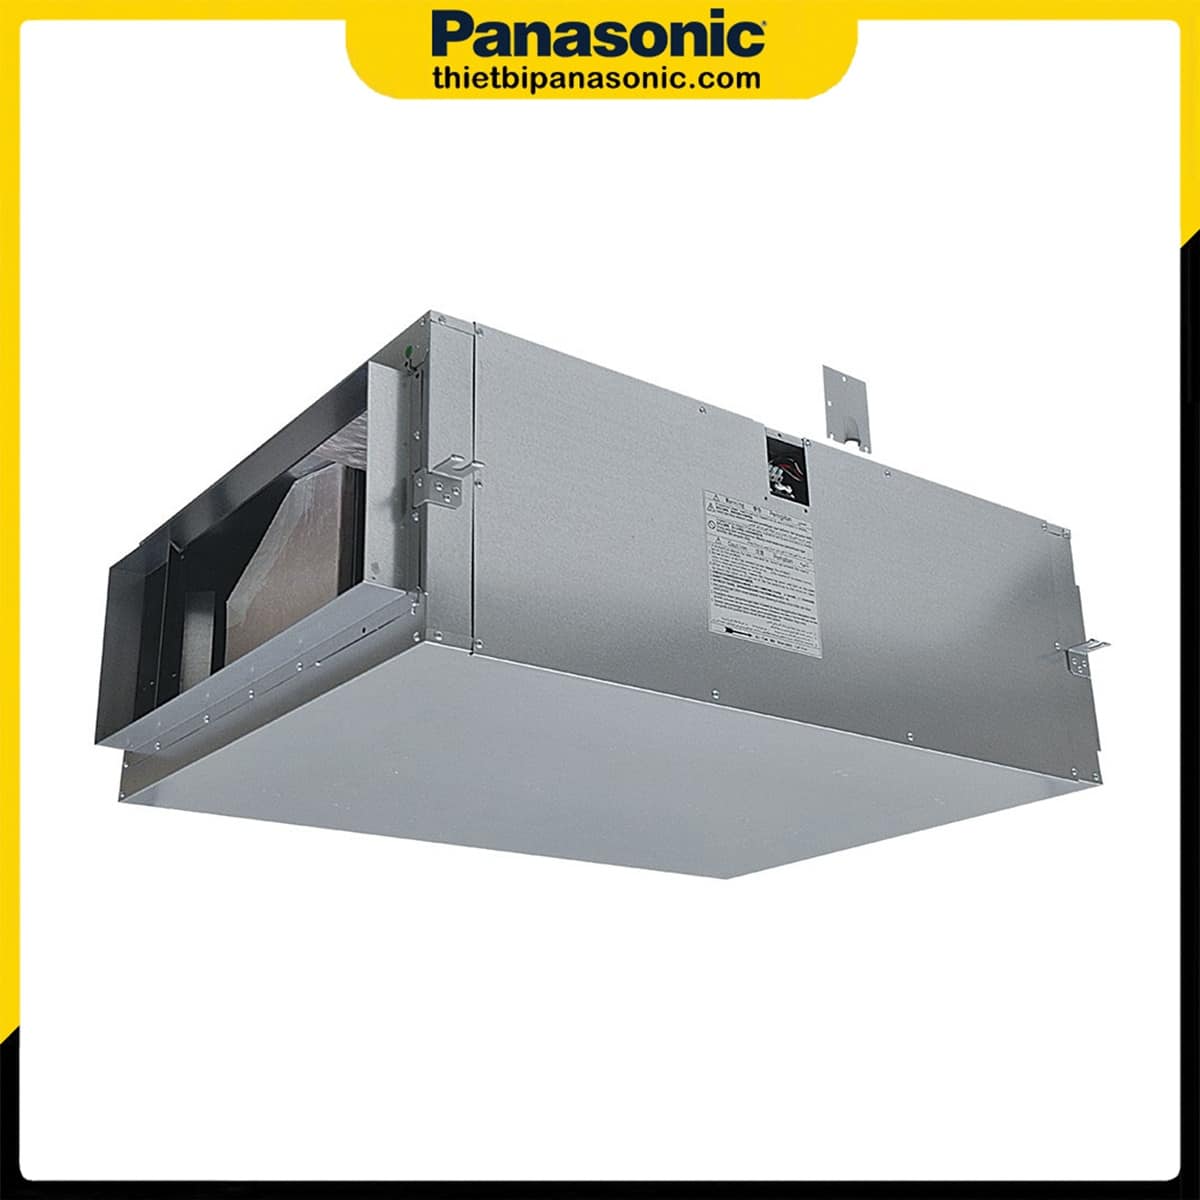 Quạt hút Cabinet 3 pha Panasonic FV-25SW3 được trang bị lớp tiêu âm mang lại độ ồn cực thấp phù hợp cho không gian văn phòng cũng như căn hộ cao cấp